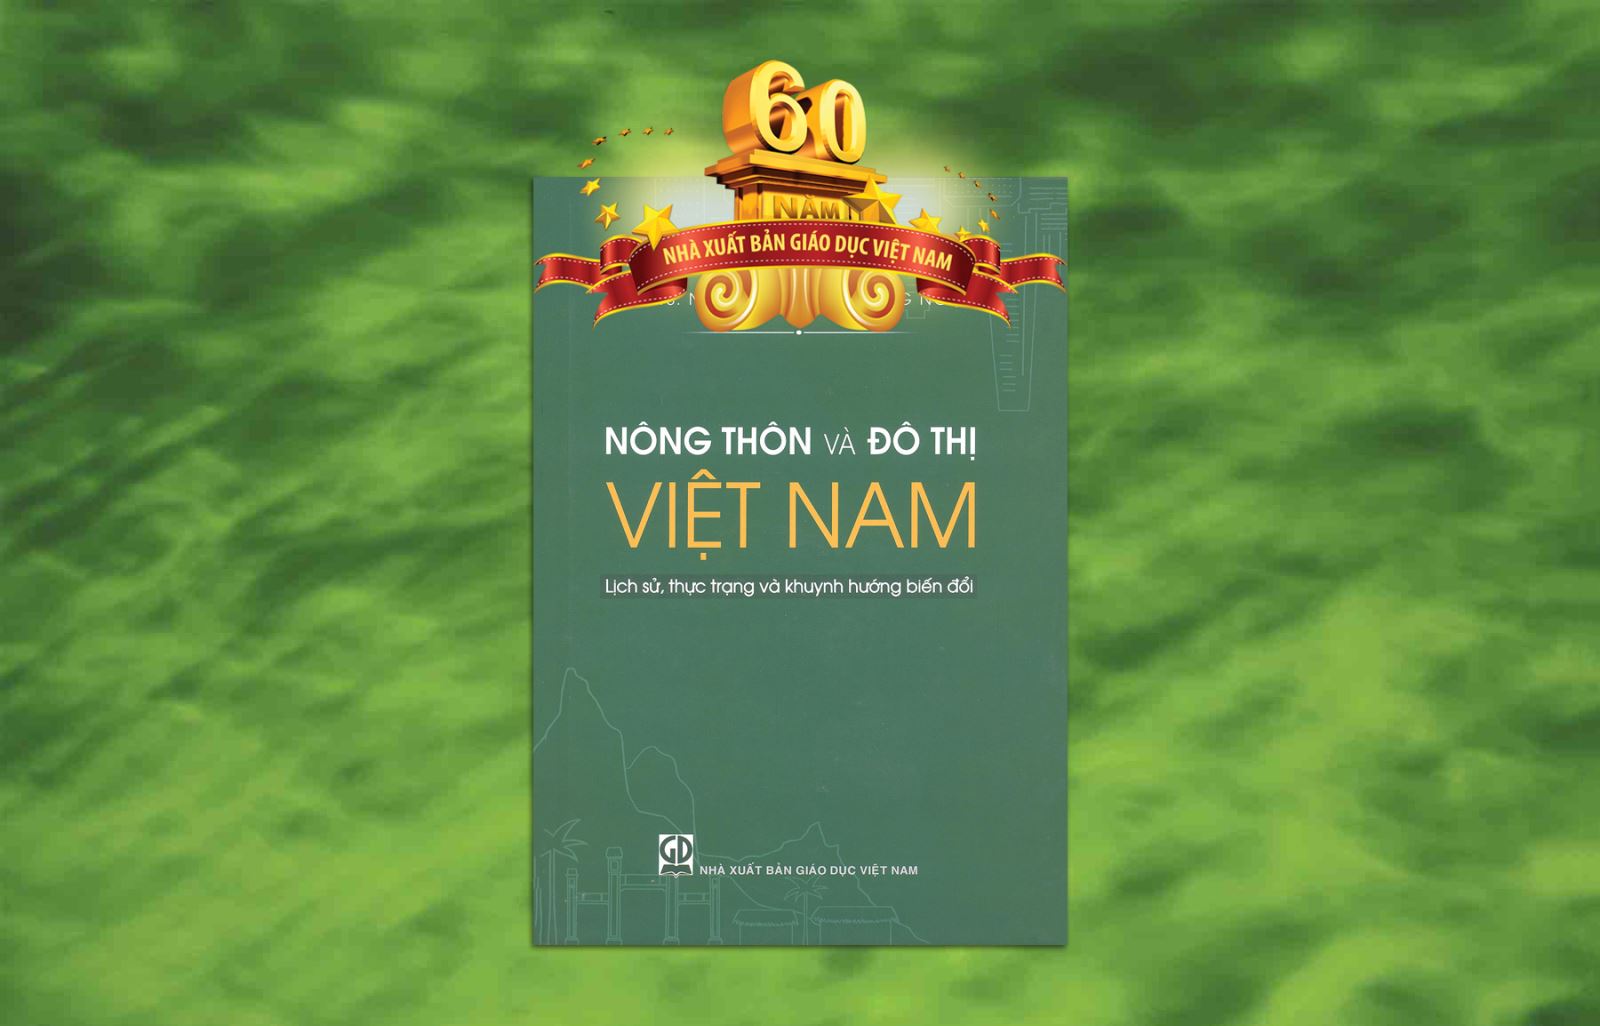 Nông thôn và đô thị Việt Nam - Lịch sử, thực trạng và khuynh hướng biến đổi